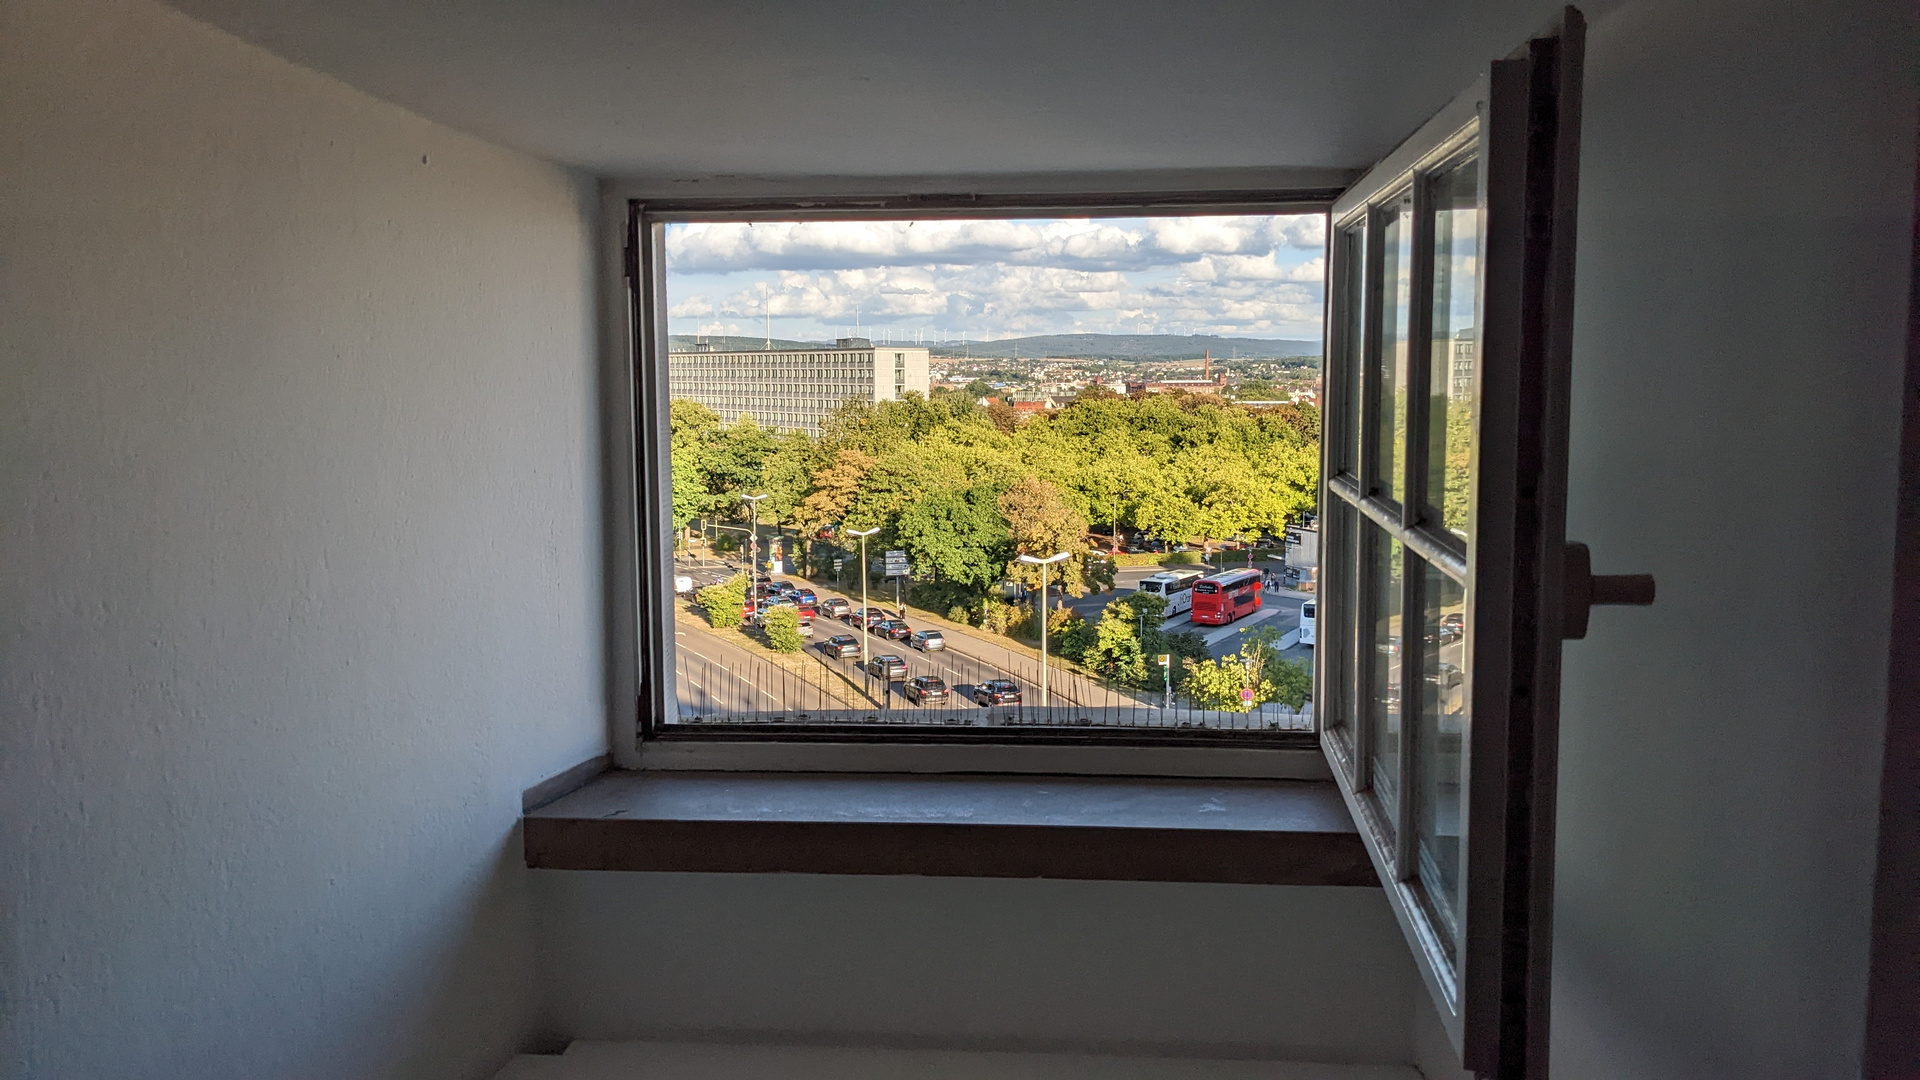 Fenster zur Welt (Kassel ...)